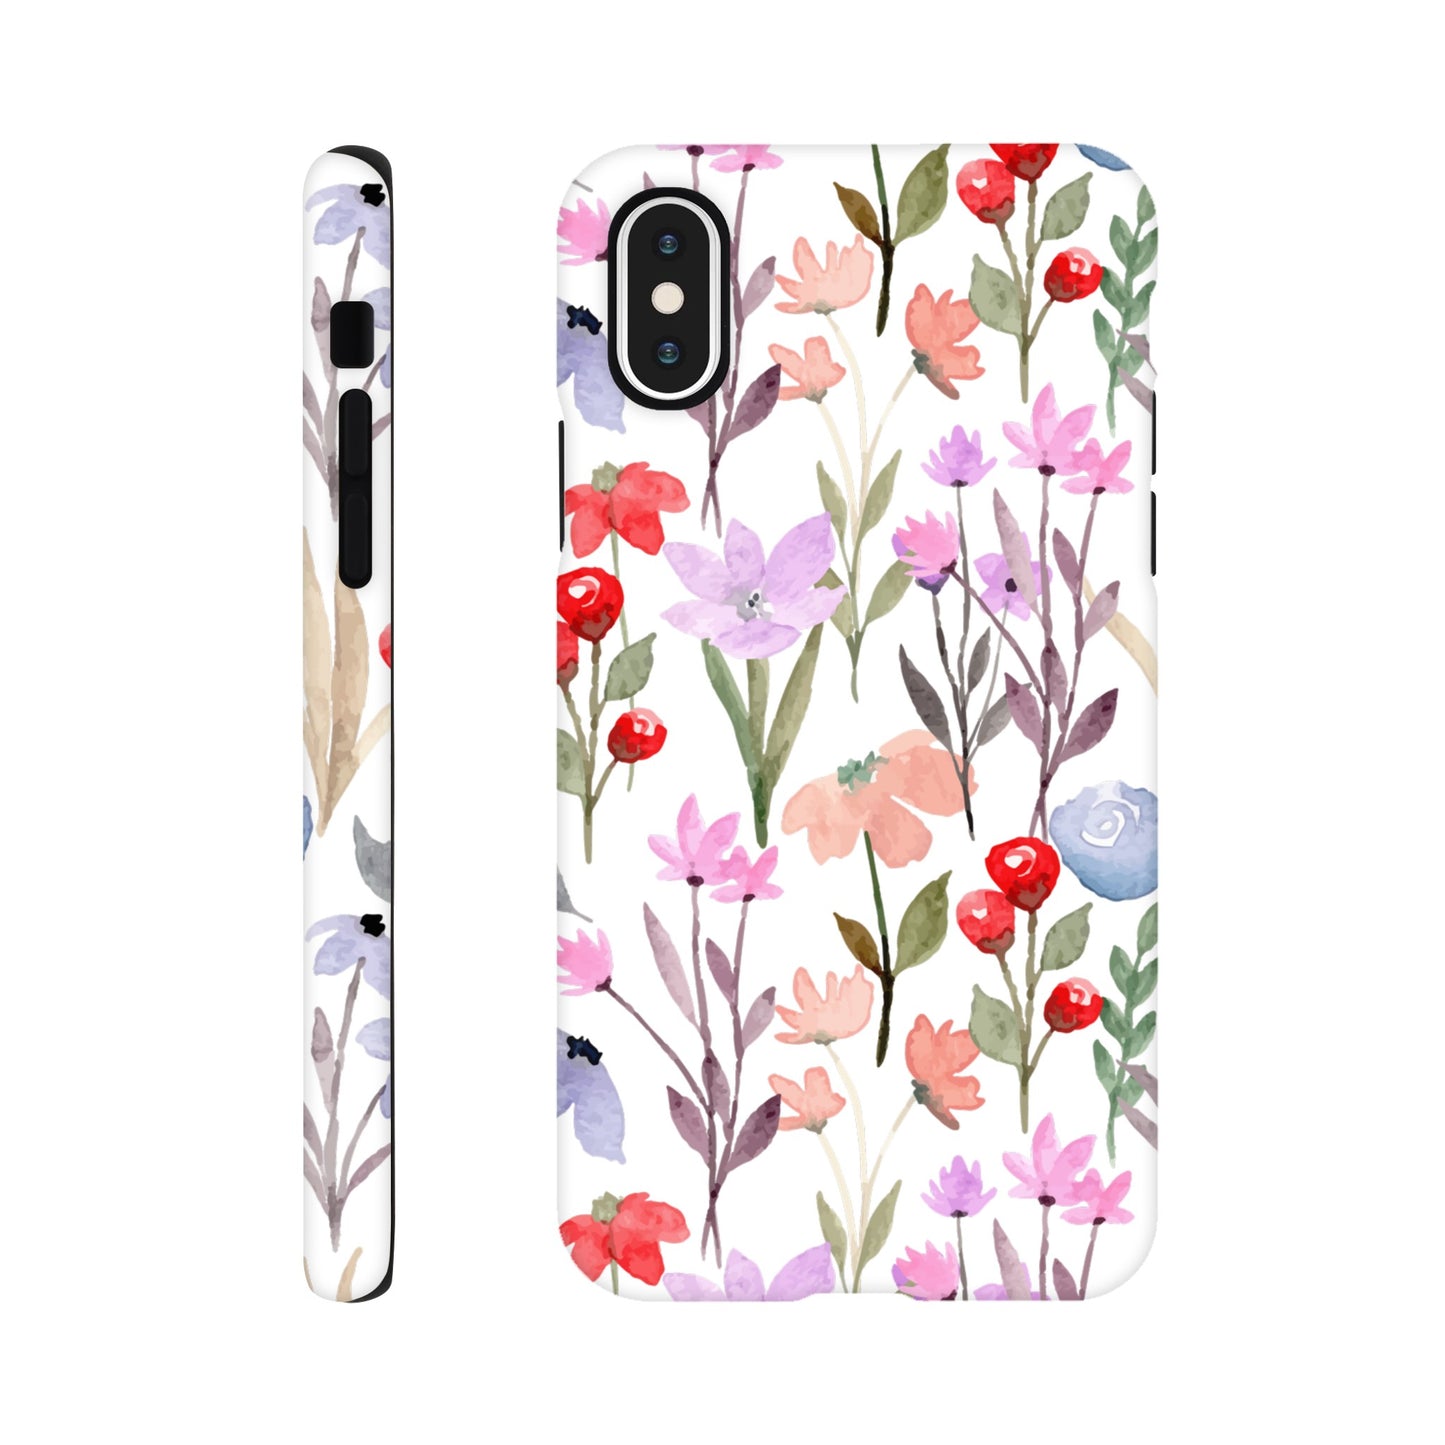 Watercolour Flowers - Phone Tough Case iPhone X Phone Case Plants